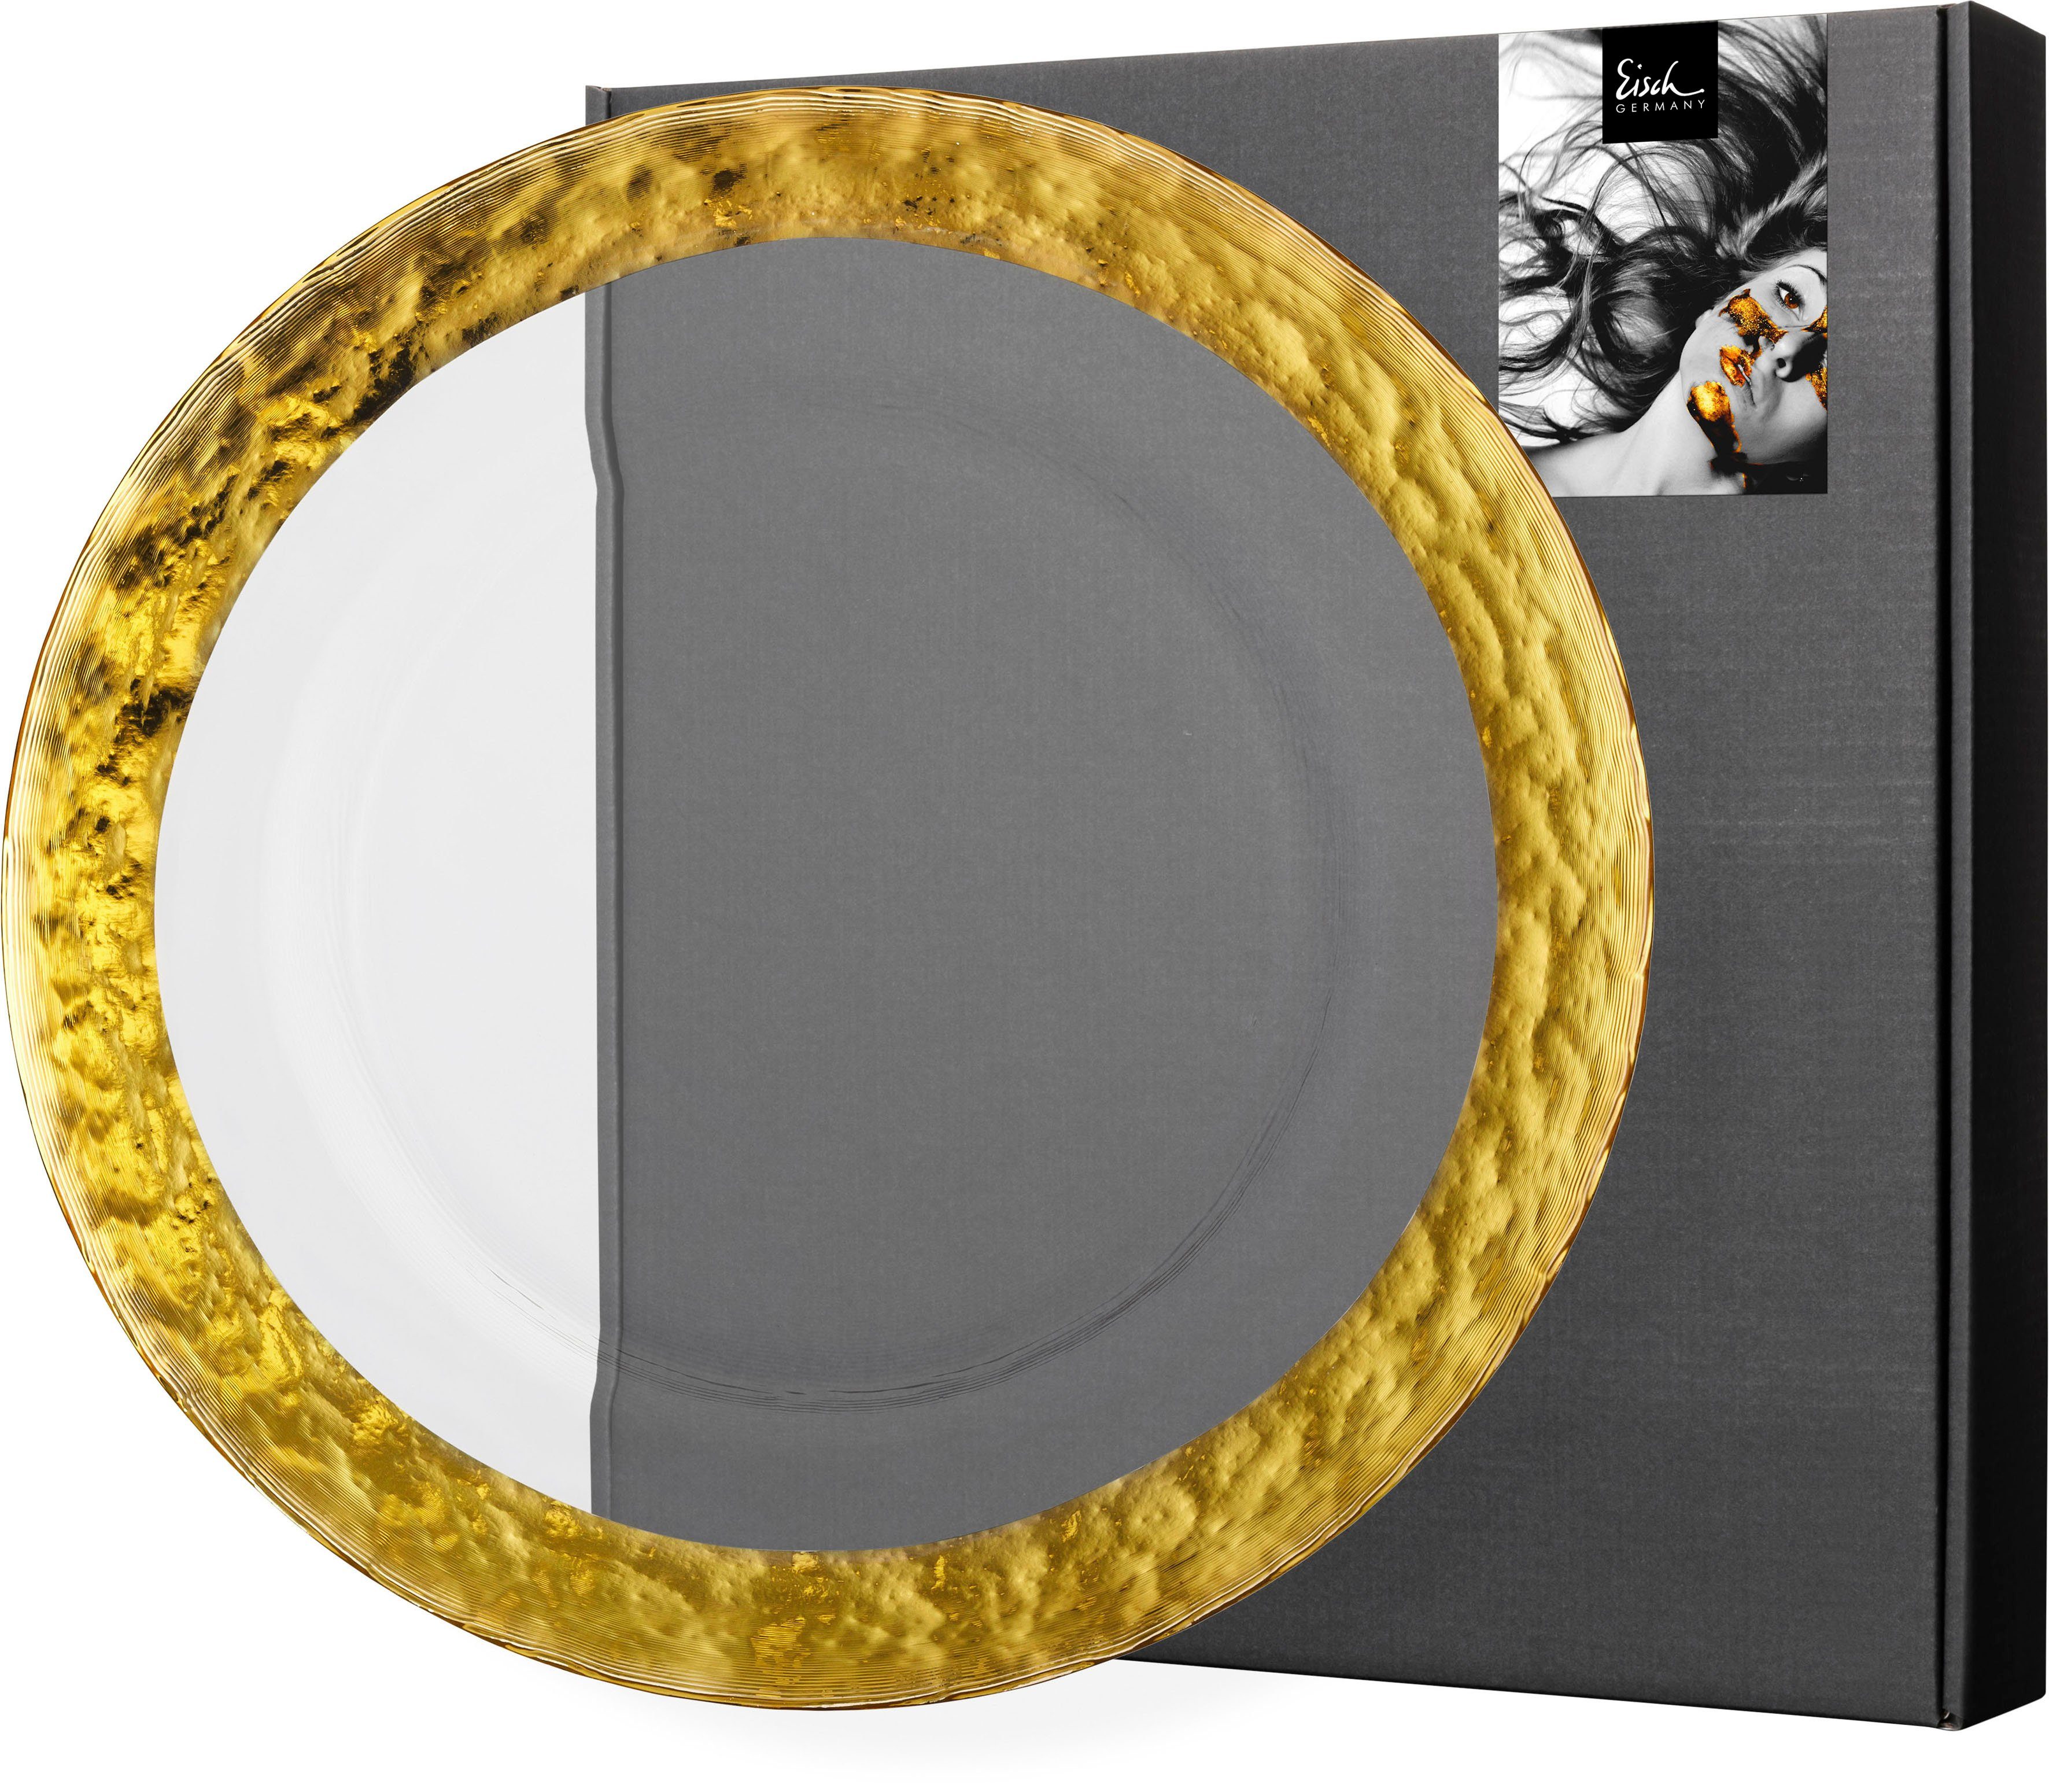 Eisch Platzteller COLOMBO GOLD, 1-tlg., 34 cm veredelt Gold, Handarbeit, 24karätigem Ø mit